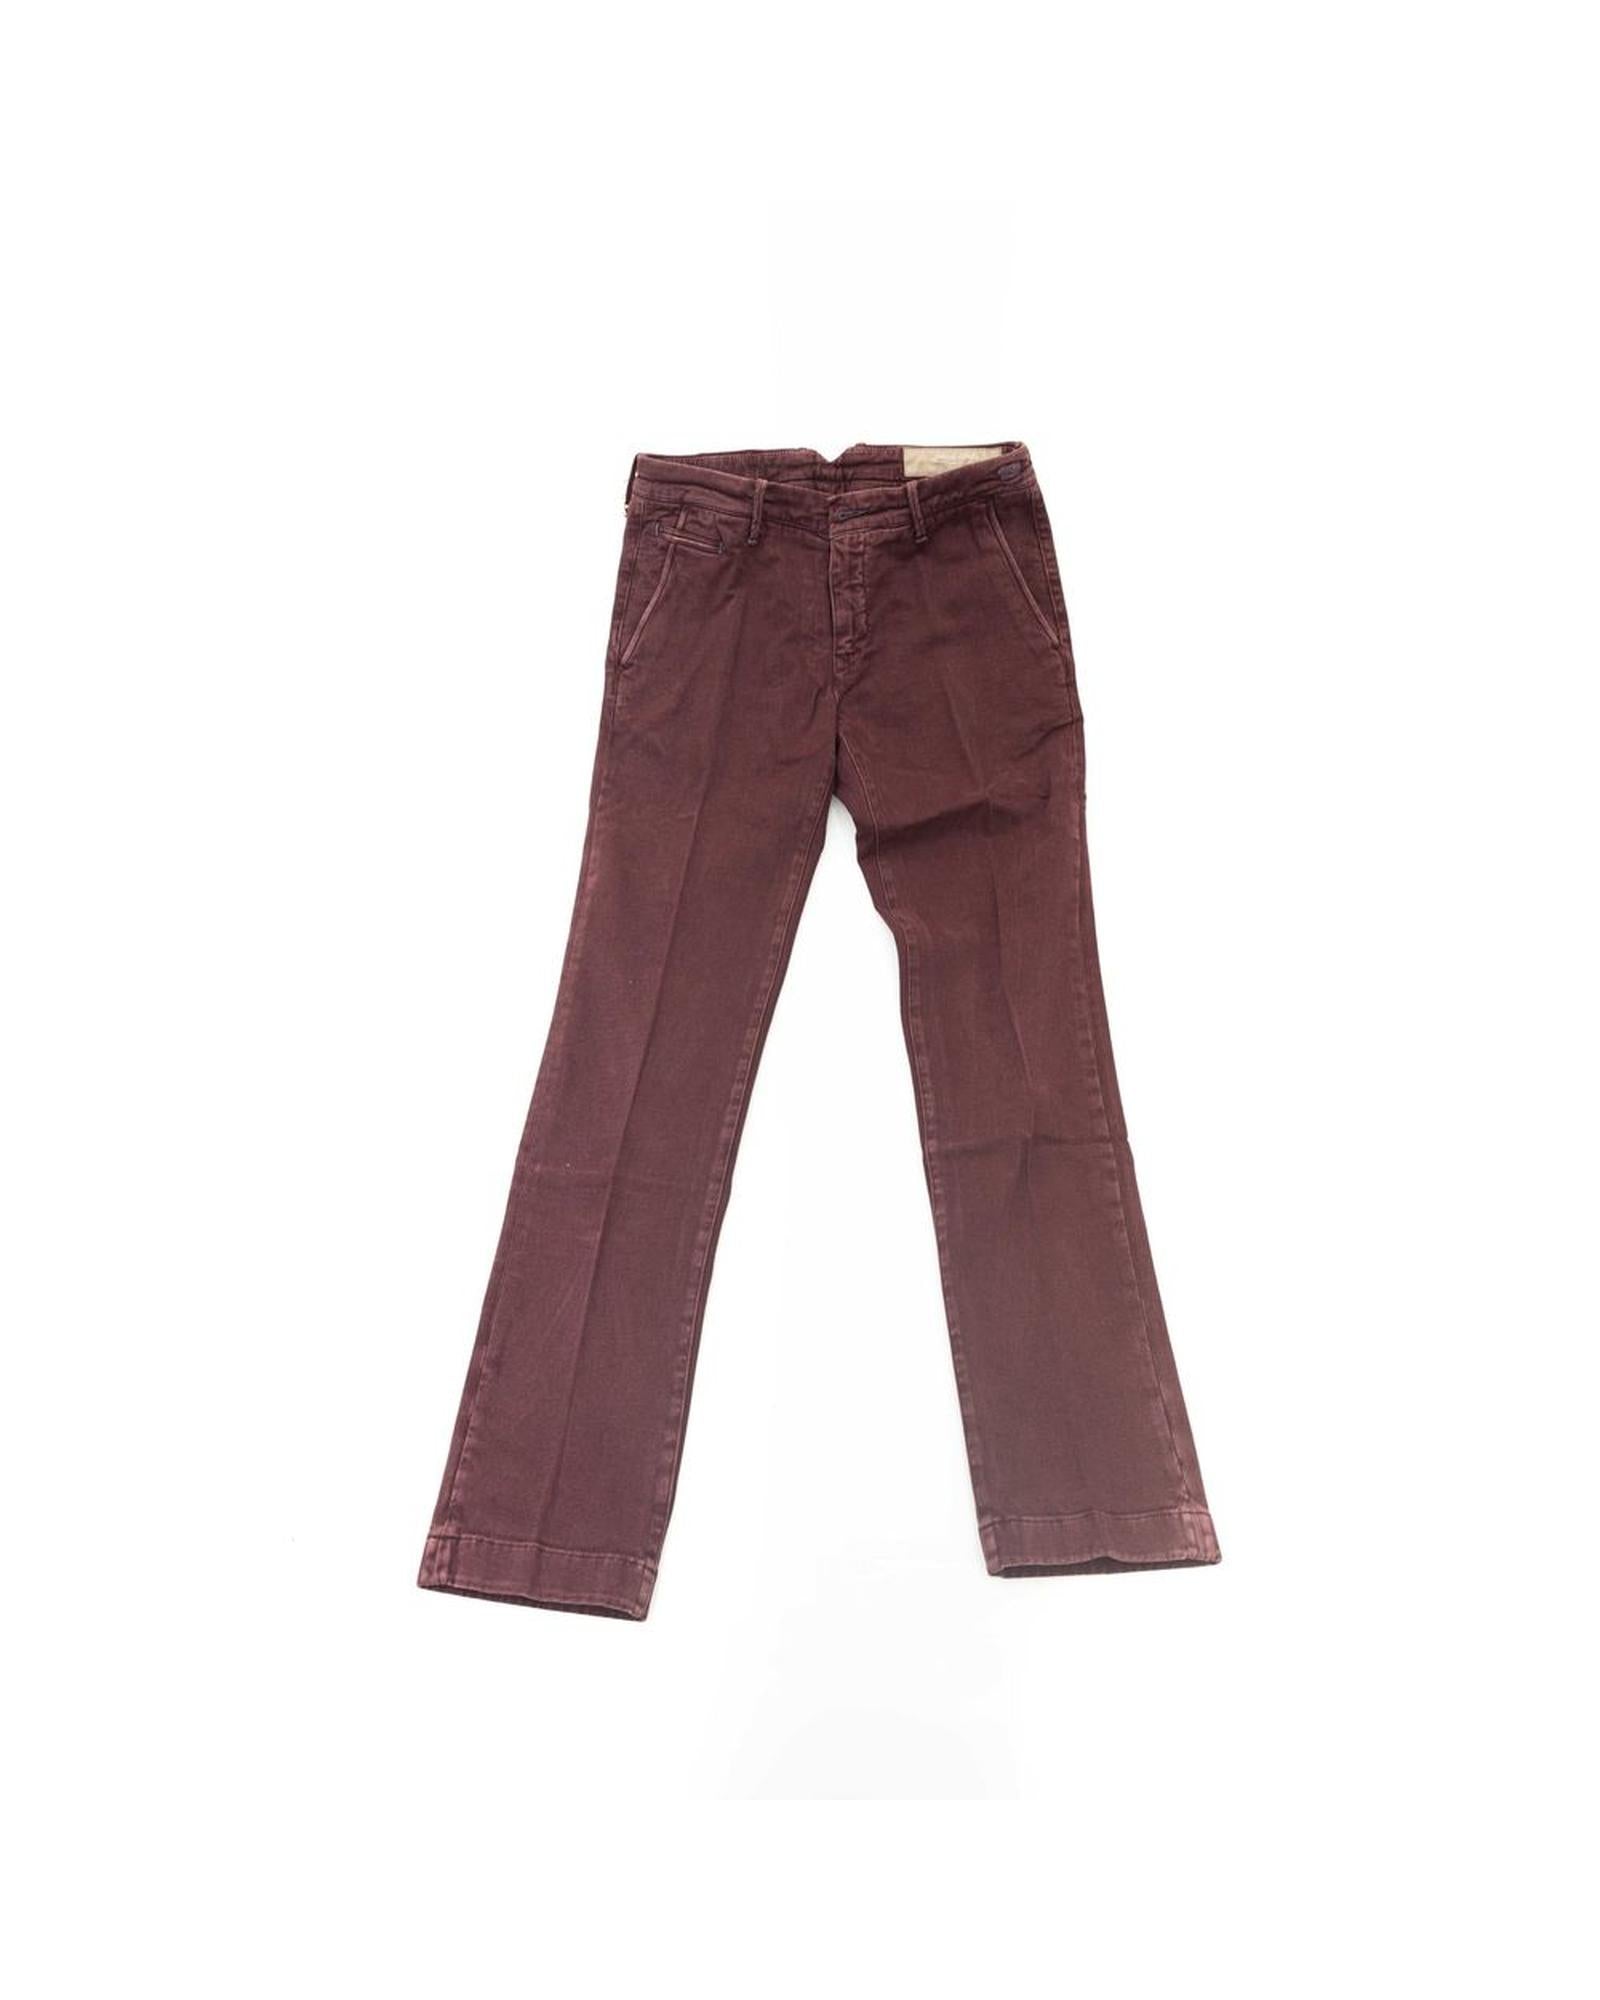 Men's Burgundy Cotton Jeans & Pant - W36 US